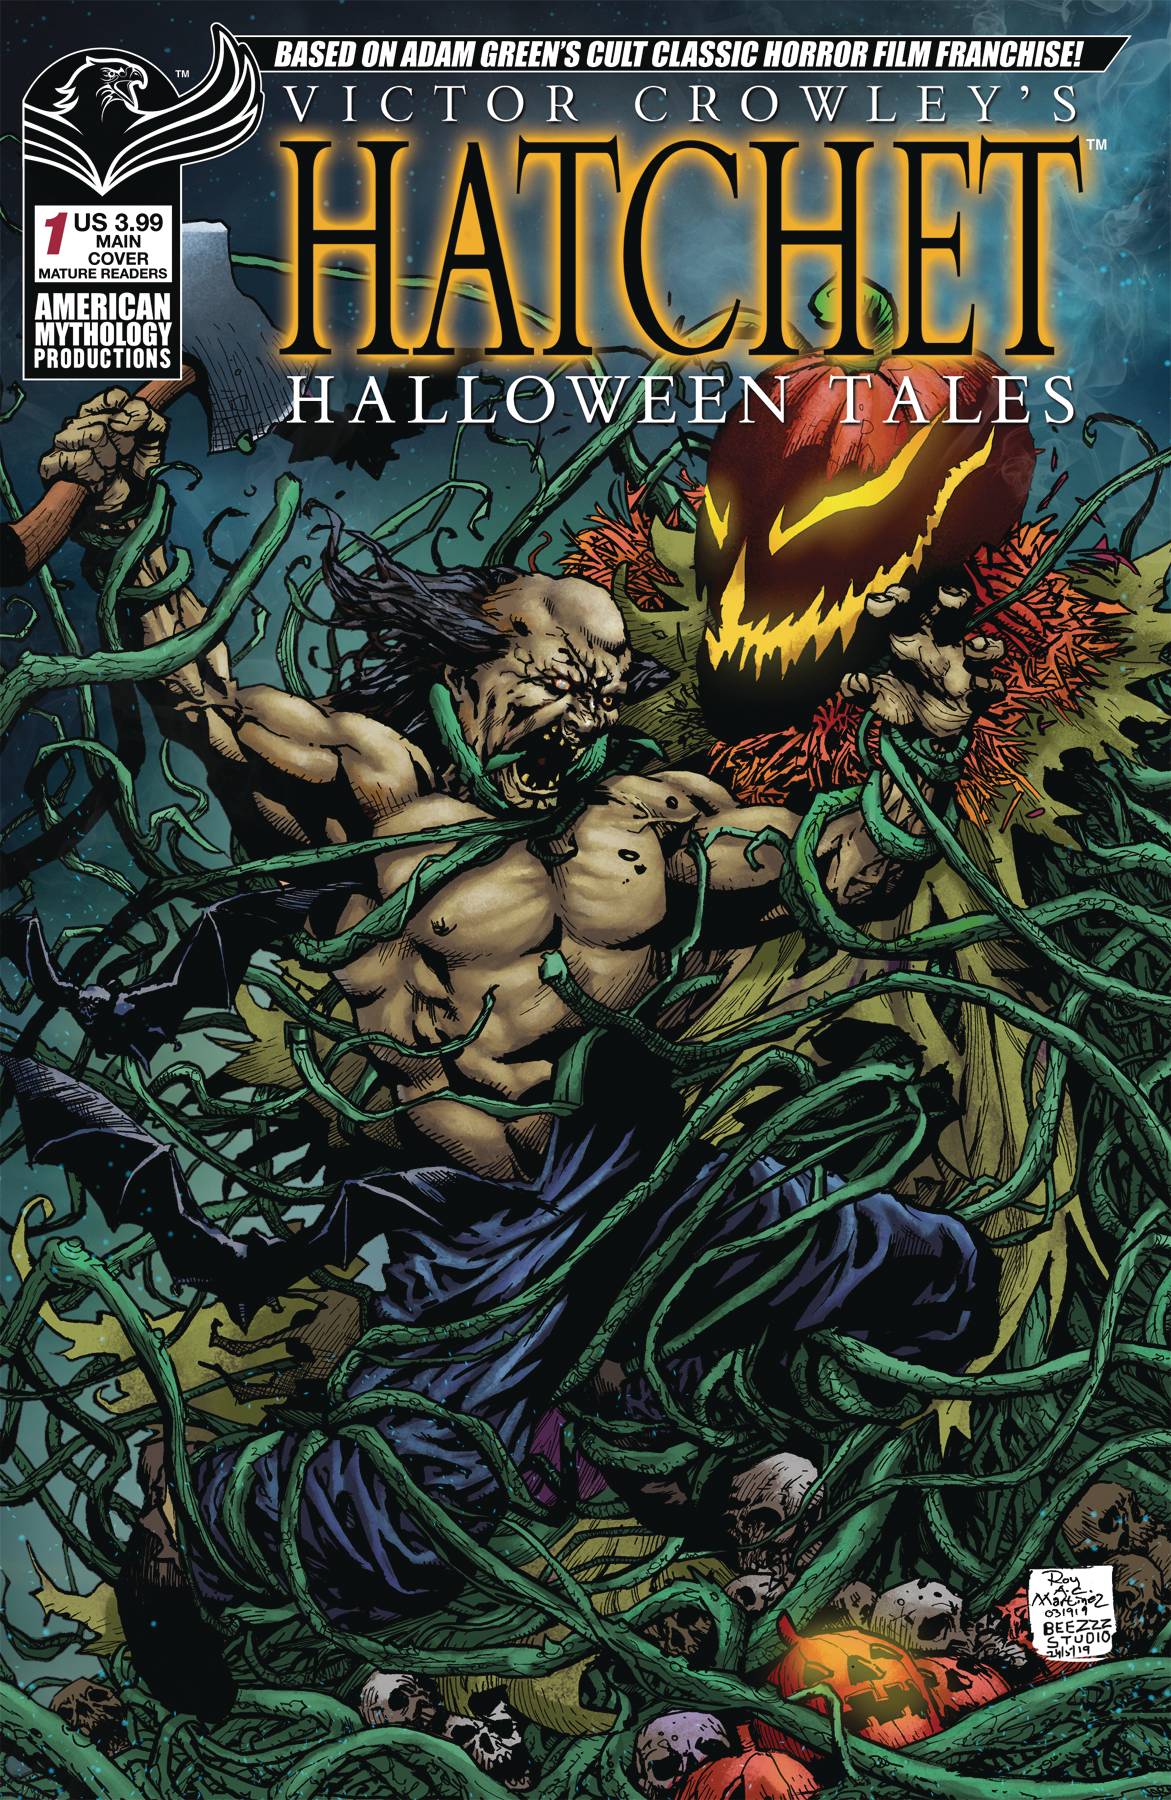 Victor Crowley Hatchet Halloween Tales #1 (2019)